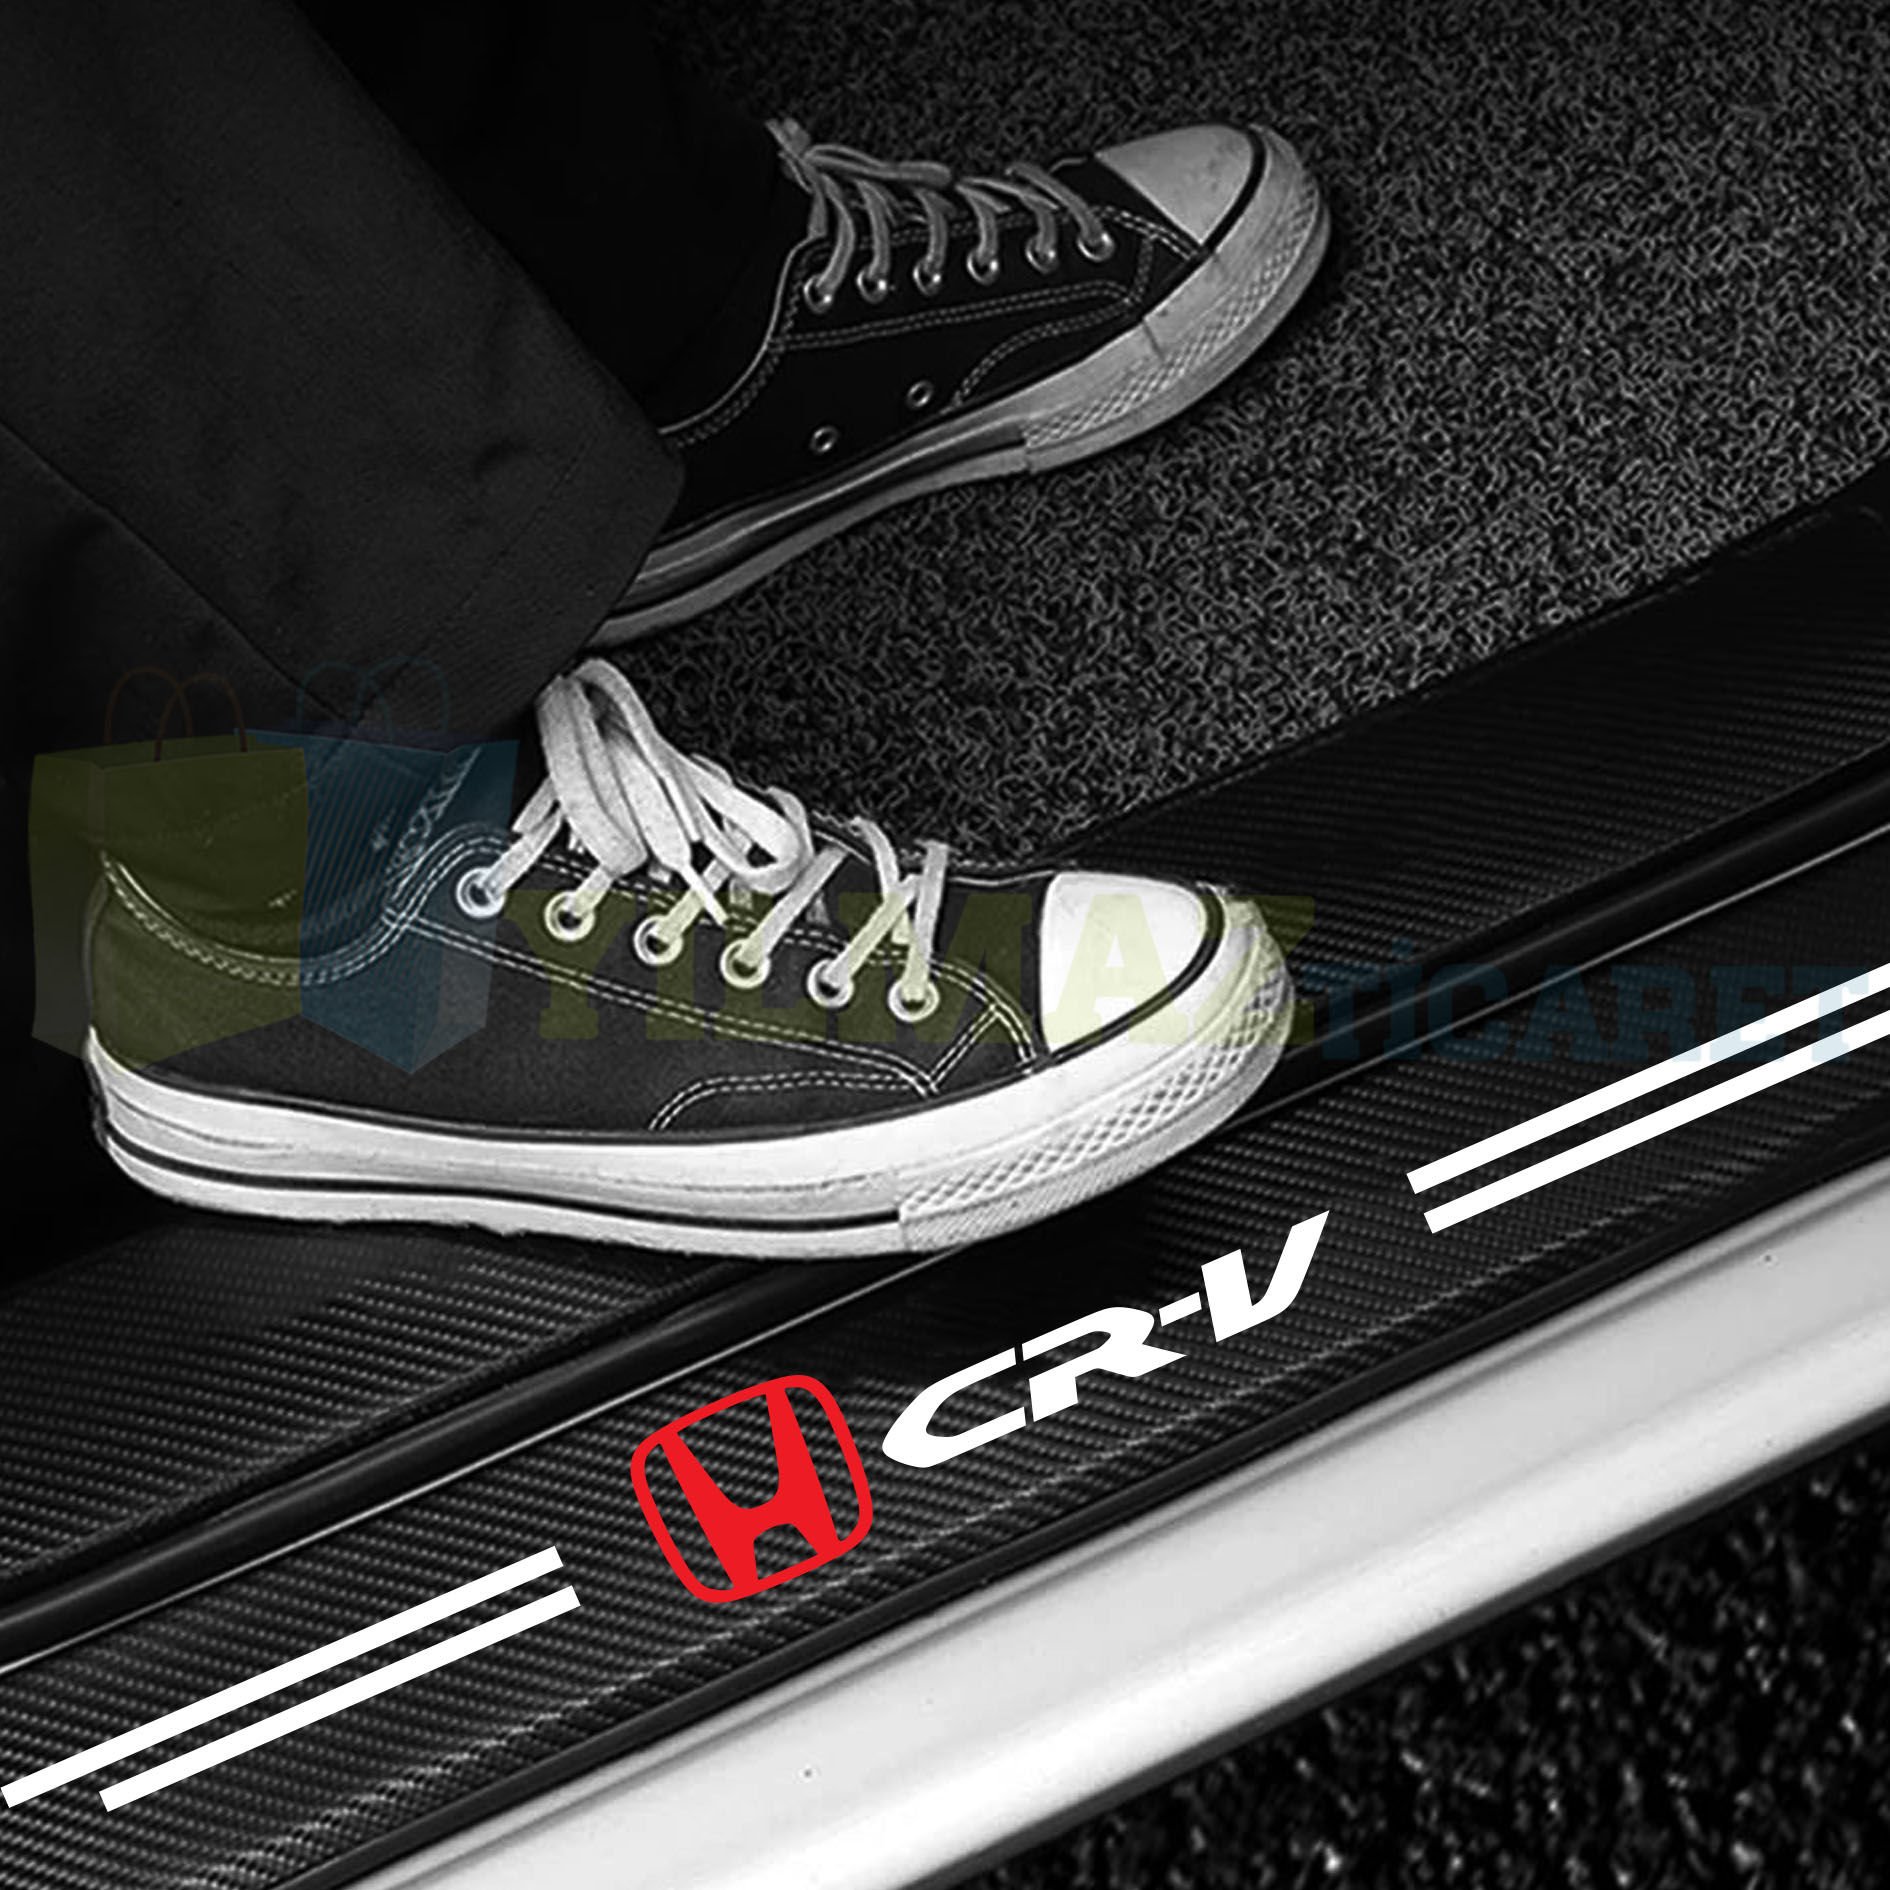 Honda Cr-V Uyumlu Karbon Kapı Eşiği Koruma Araba Etiket Oto Sticker Yapıştırma 4 Parça